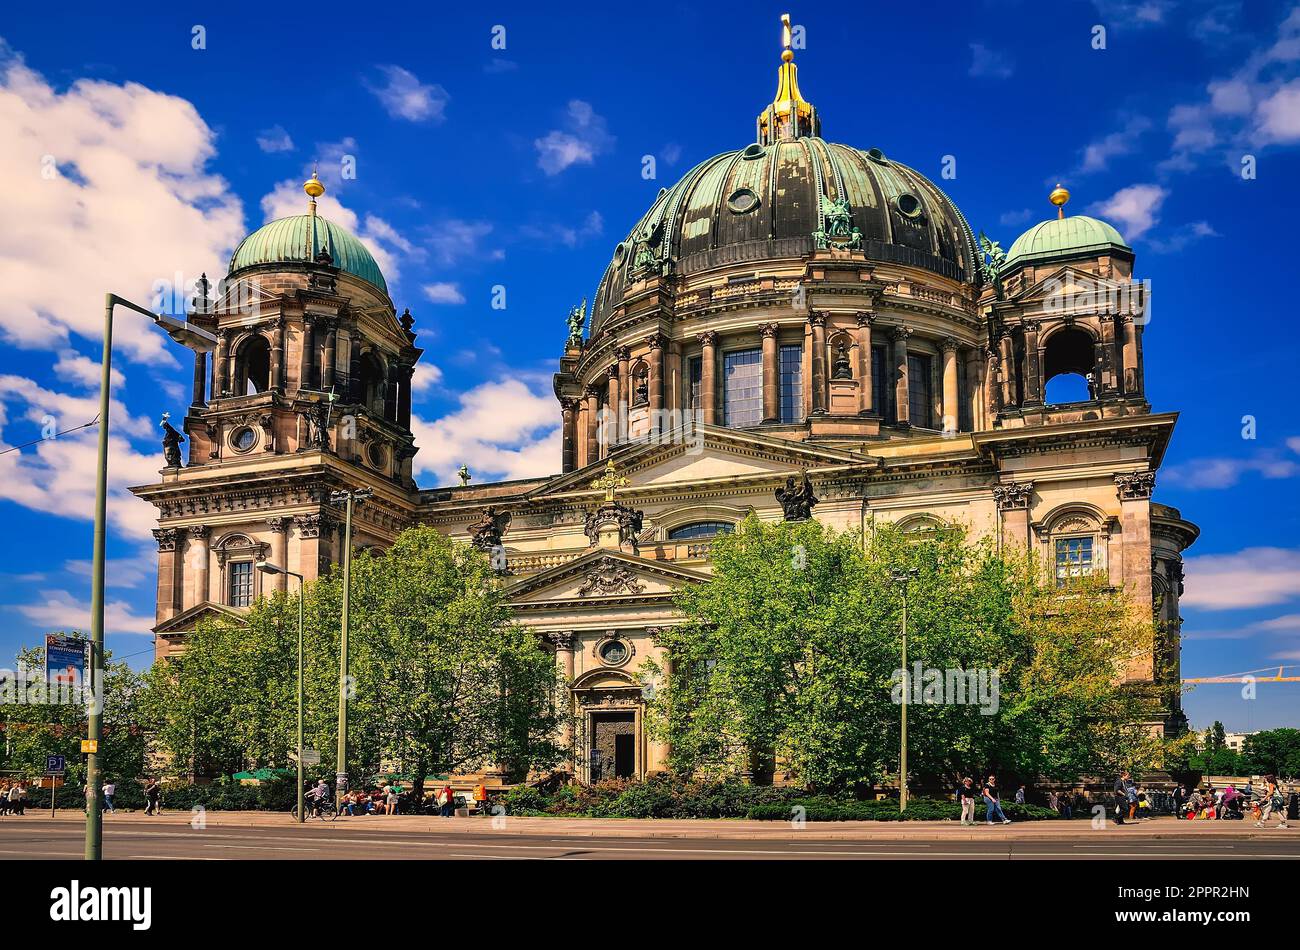 Berlin, Allemagne - 30 avril 2014: Cathédrale de Berlin, Allemagne. L'un des monuments les plus célèbres, situé sur l'île des musées dans le Banque D'Images